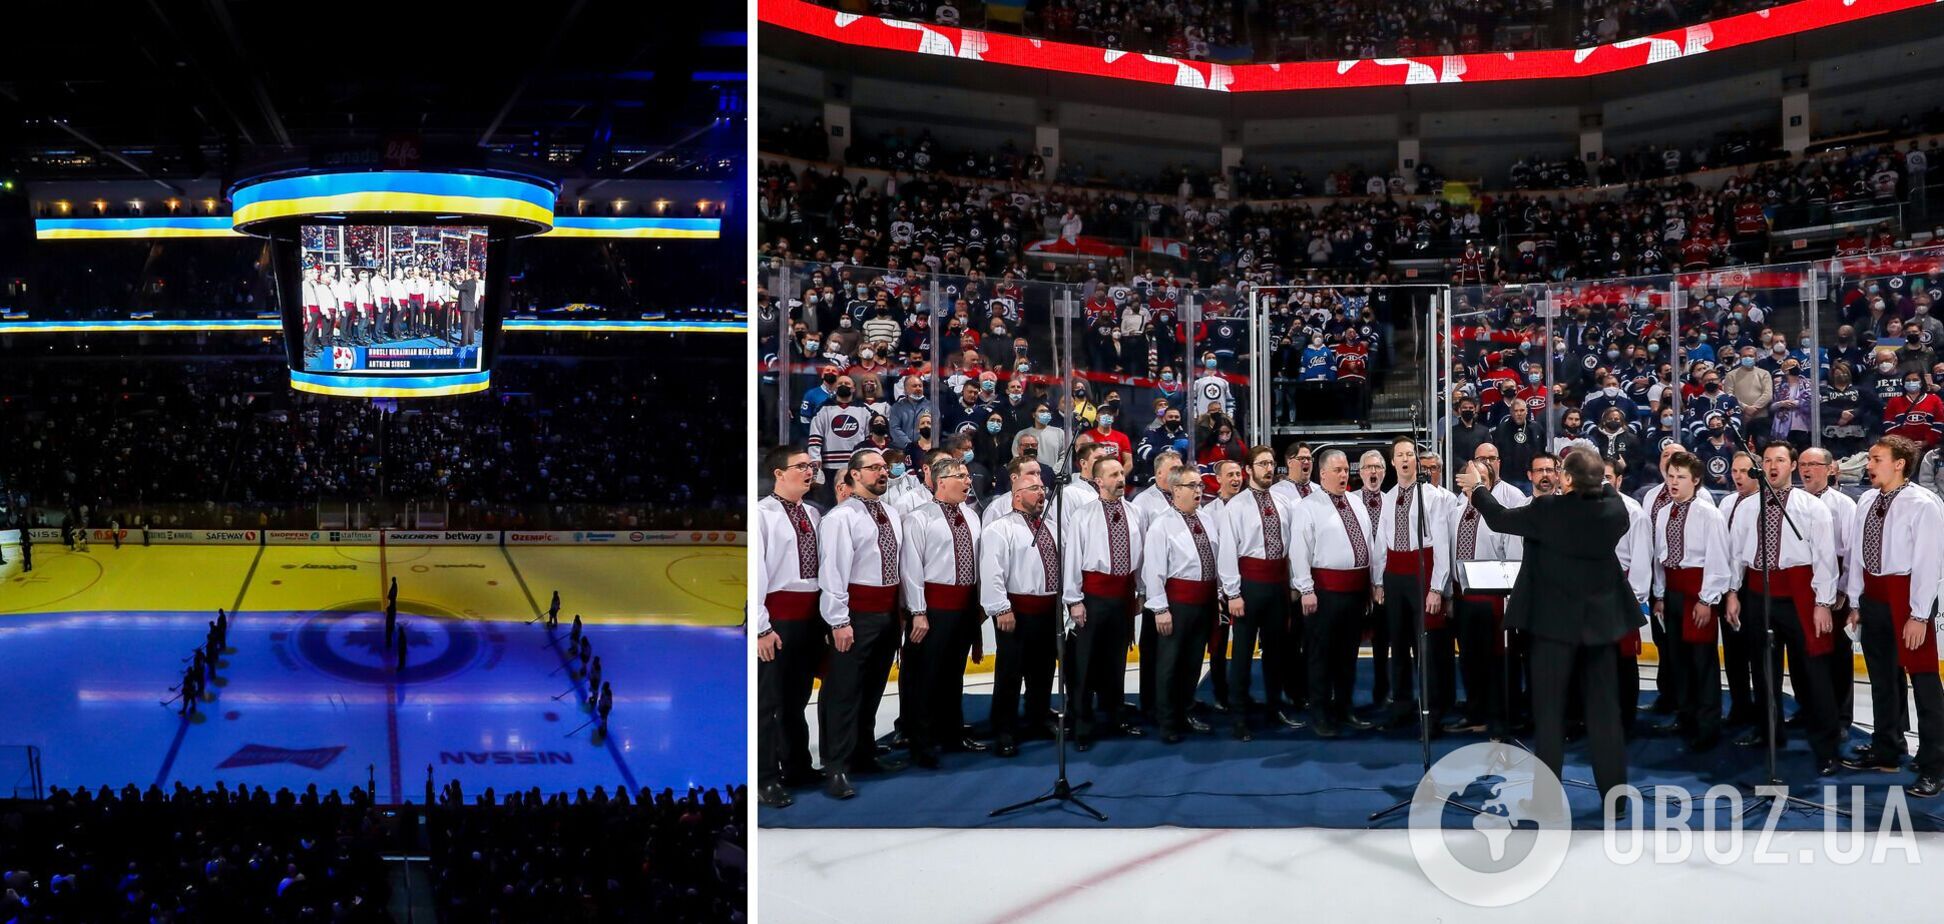 Хор емоційно виконав гімн України на матчі НХЛ, а канадці влаштували овацію. Відео